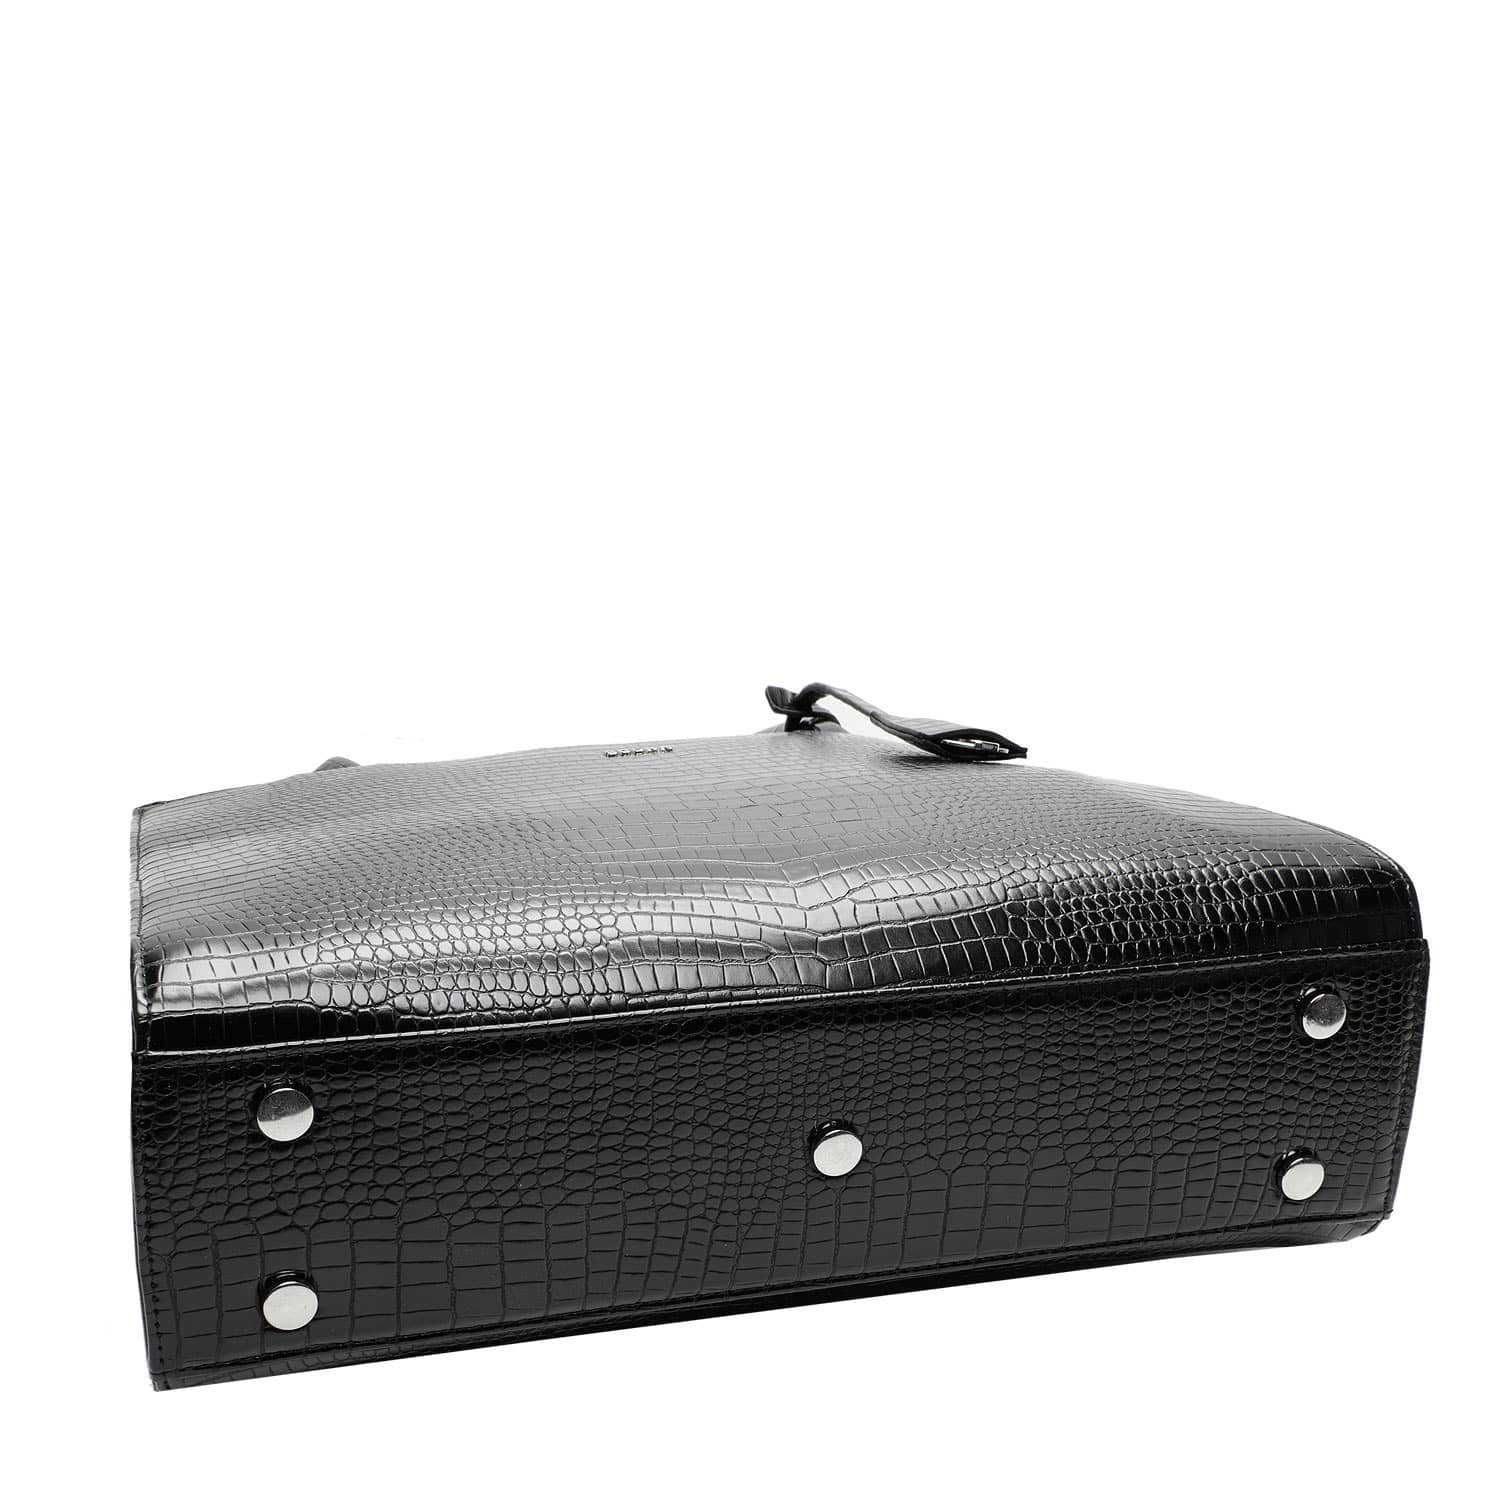 SOCHA Laptoptasche Midi Croco Black Zoll, - Aktentasche elegante mit Vollausstattung Schultergurt Krokotasche - 14 für Damen